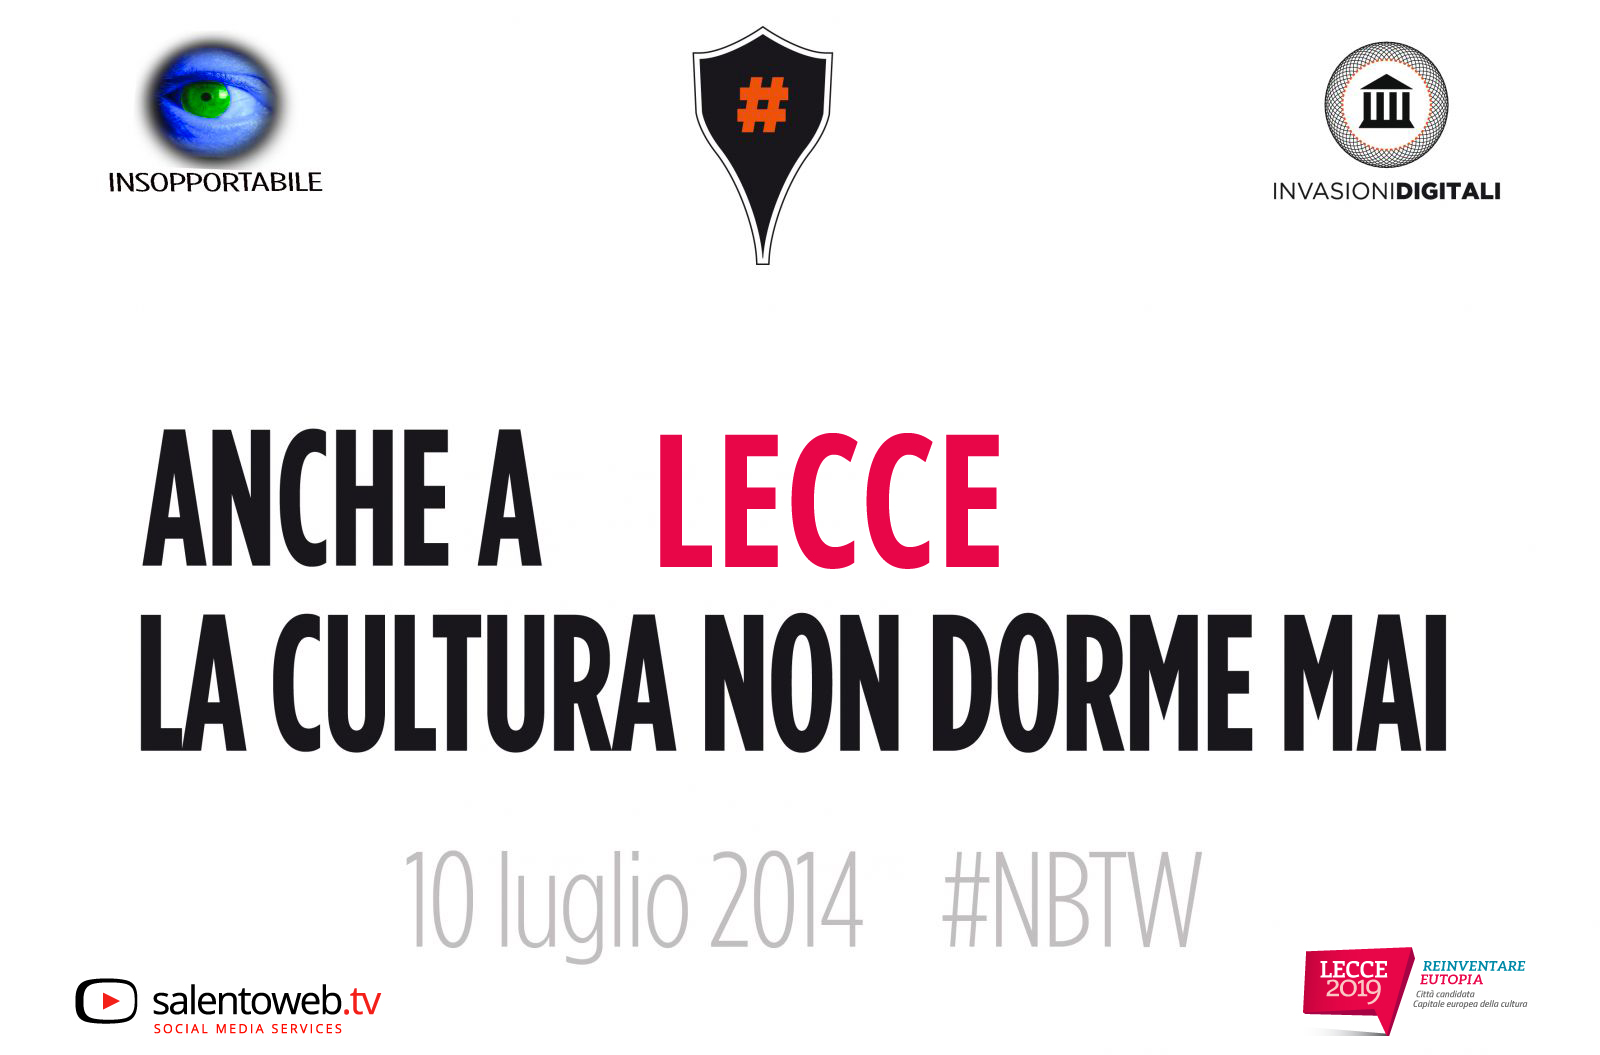 #NBTW: anche a Lecce la cultura non dorme mai